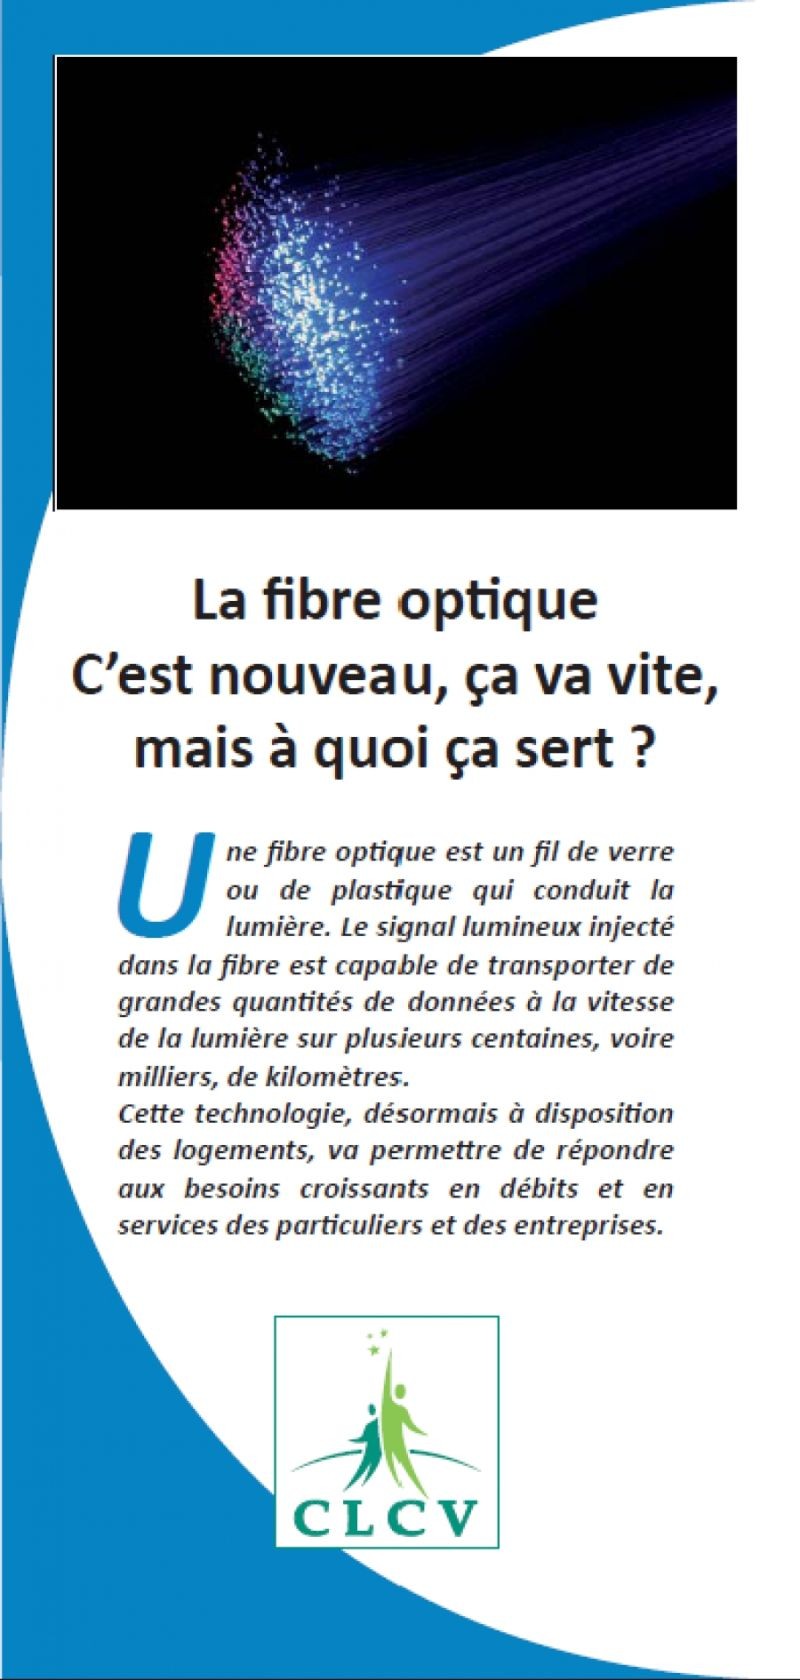 La fibre optique : c’est nouveau, ça va vite, mais à quoi ça sert ?